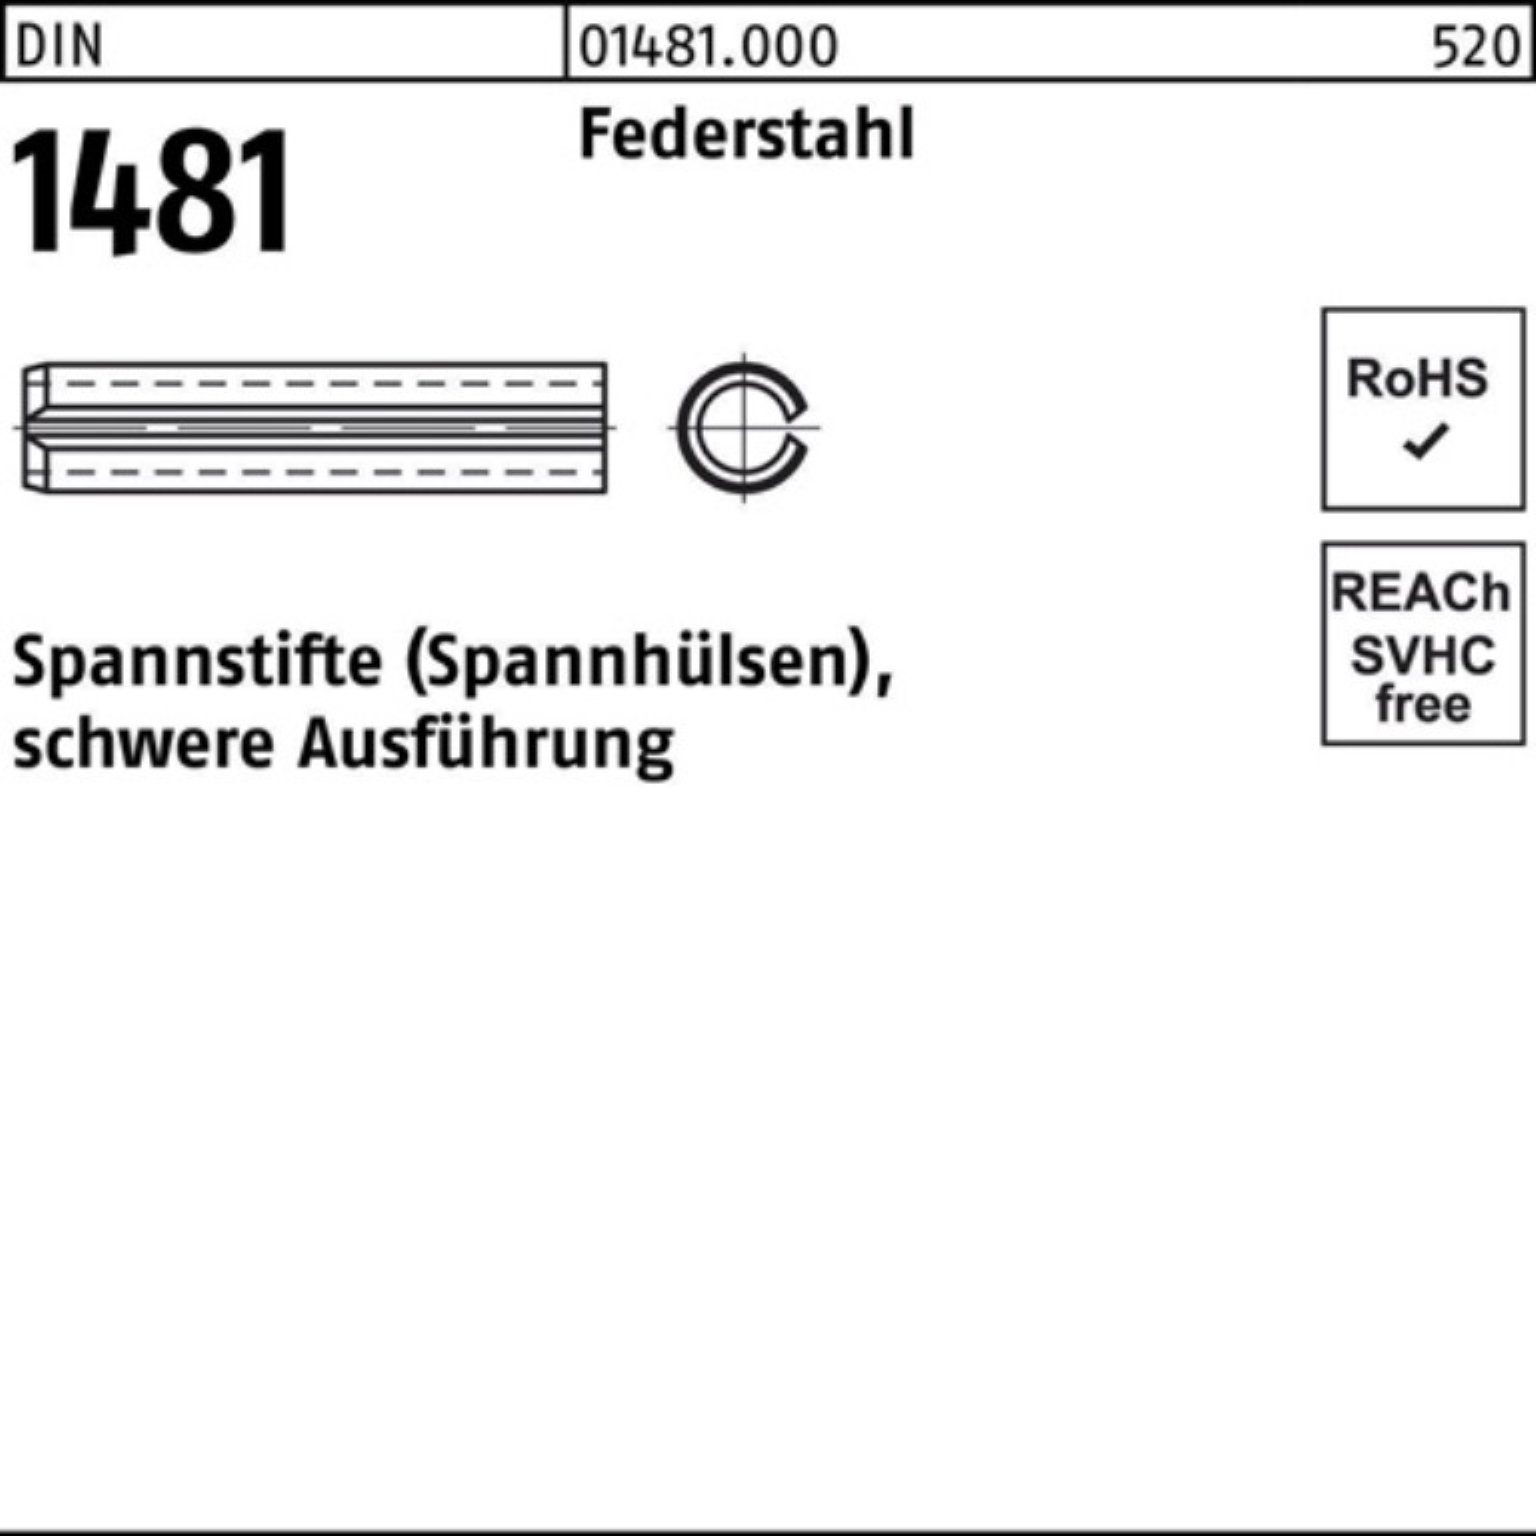 Reyher Spannstift 100er Federstahl Pack DIN 36 28x 1 1481 Ausführung Spannstift schwere